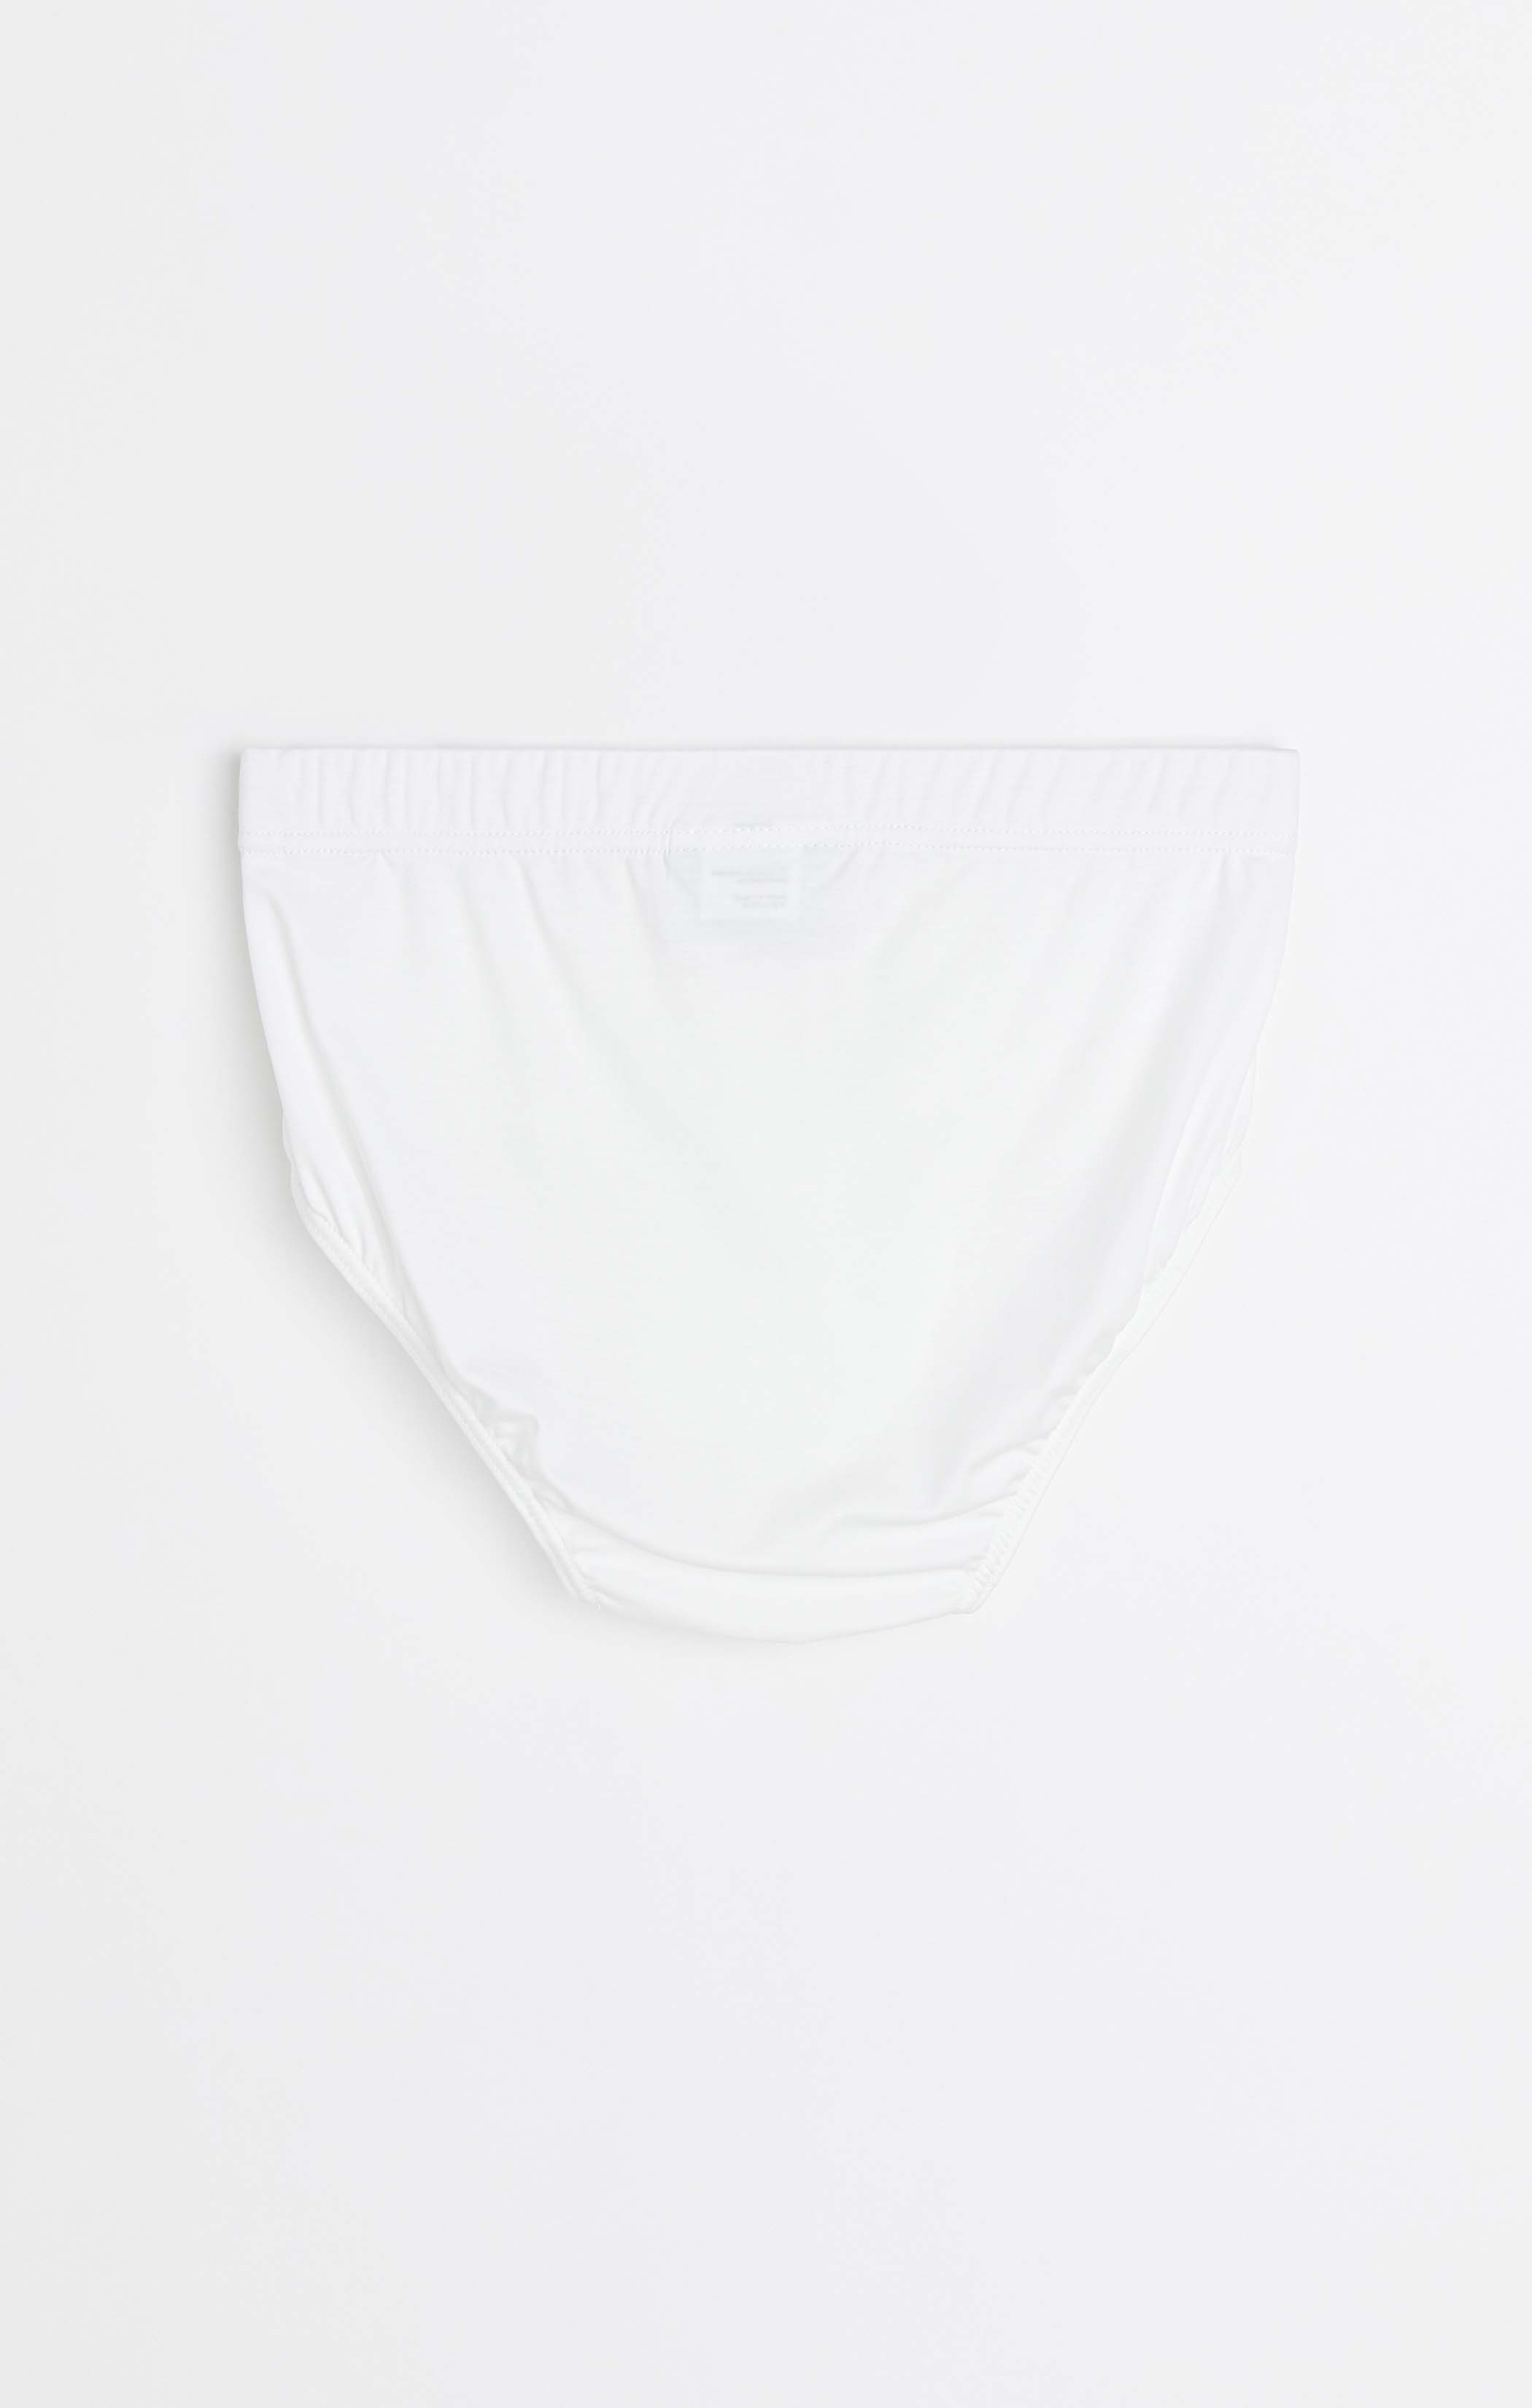 Mens Rio 7 Pack Slim Fit Briefs Blue/Charcoal Cotton Undies Underwear Jocks